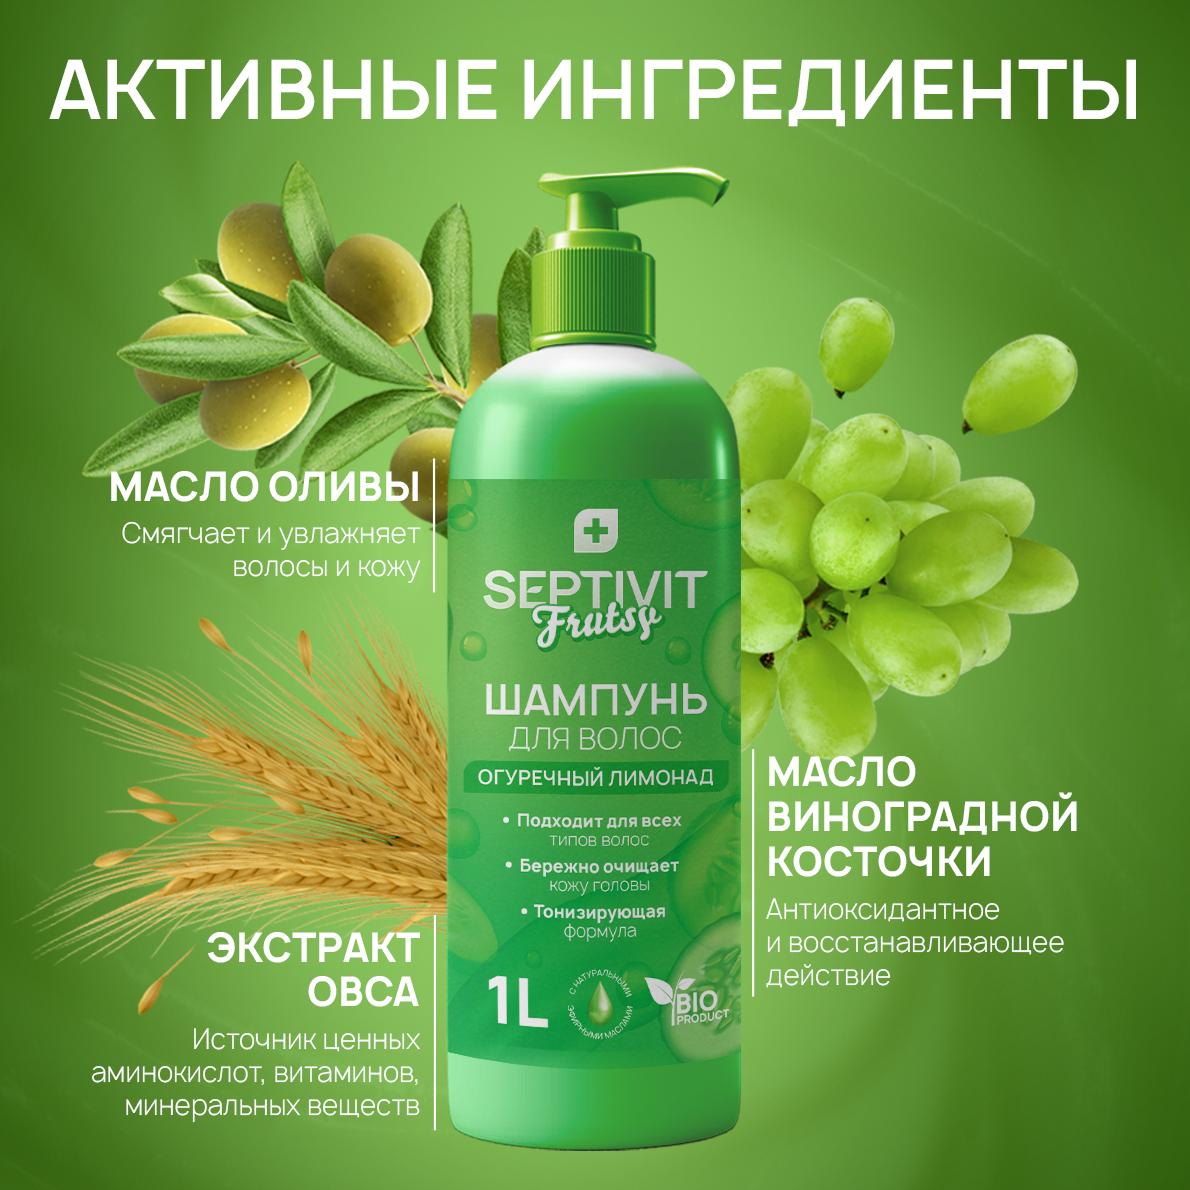 Шампунь для волос SEPTIVIT Premium Frutsy огуречный лимонад 1 л - фото 6